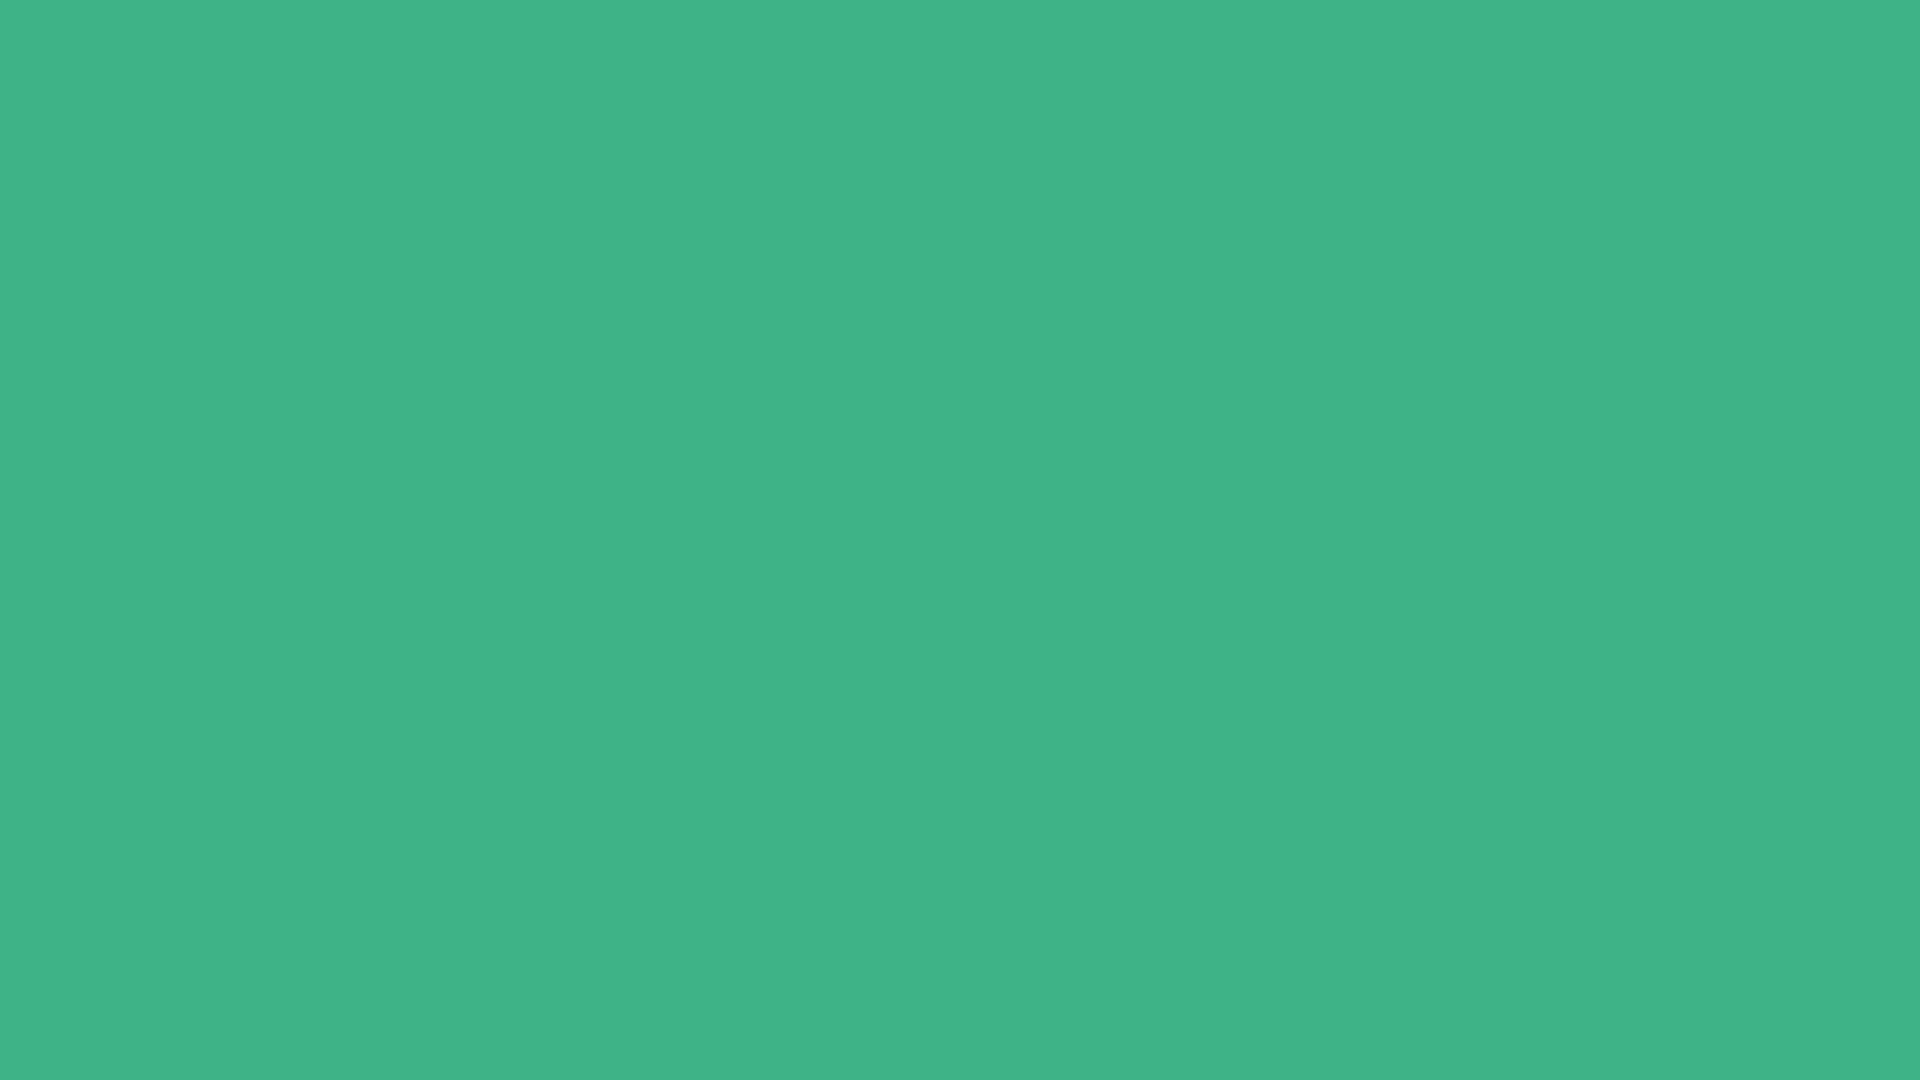 Wallpaperde Color Verde Vibrante Sólido. Fondo de pantalla